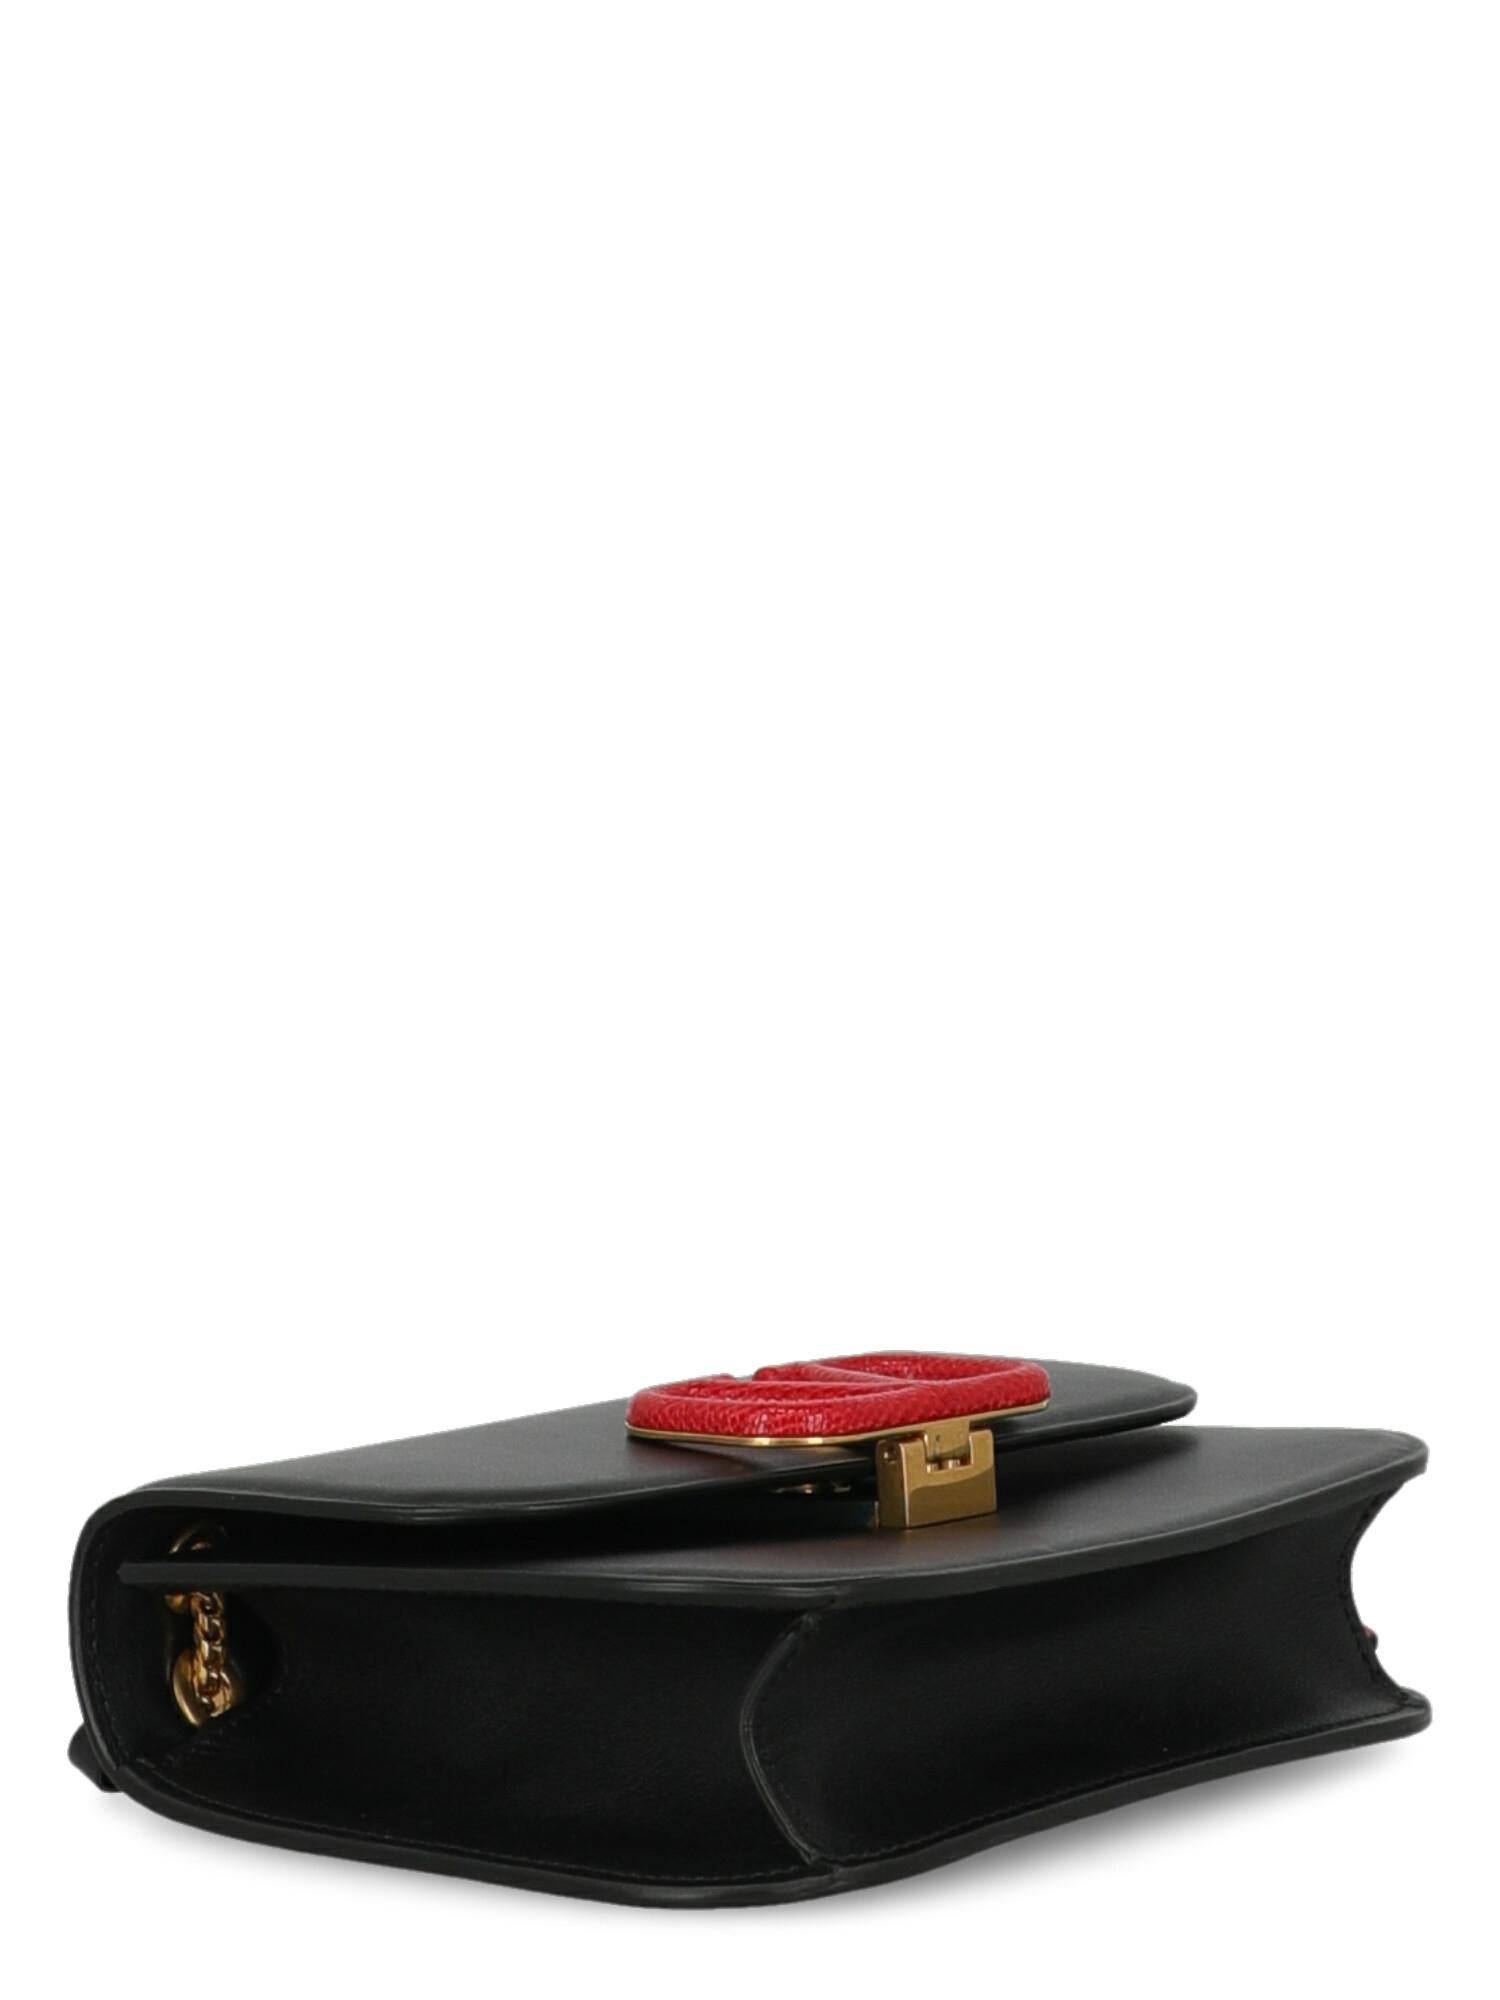 Valentino Woman Shoulder bag Black Leather 1